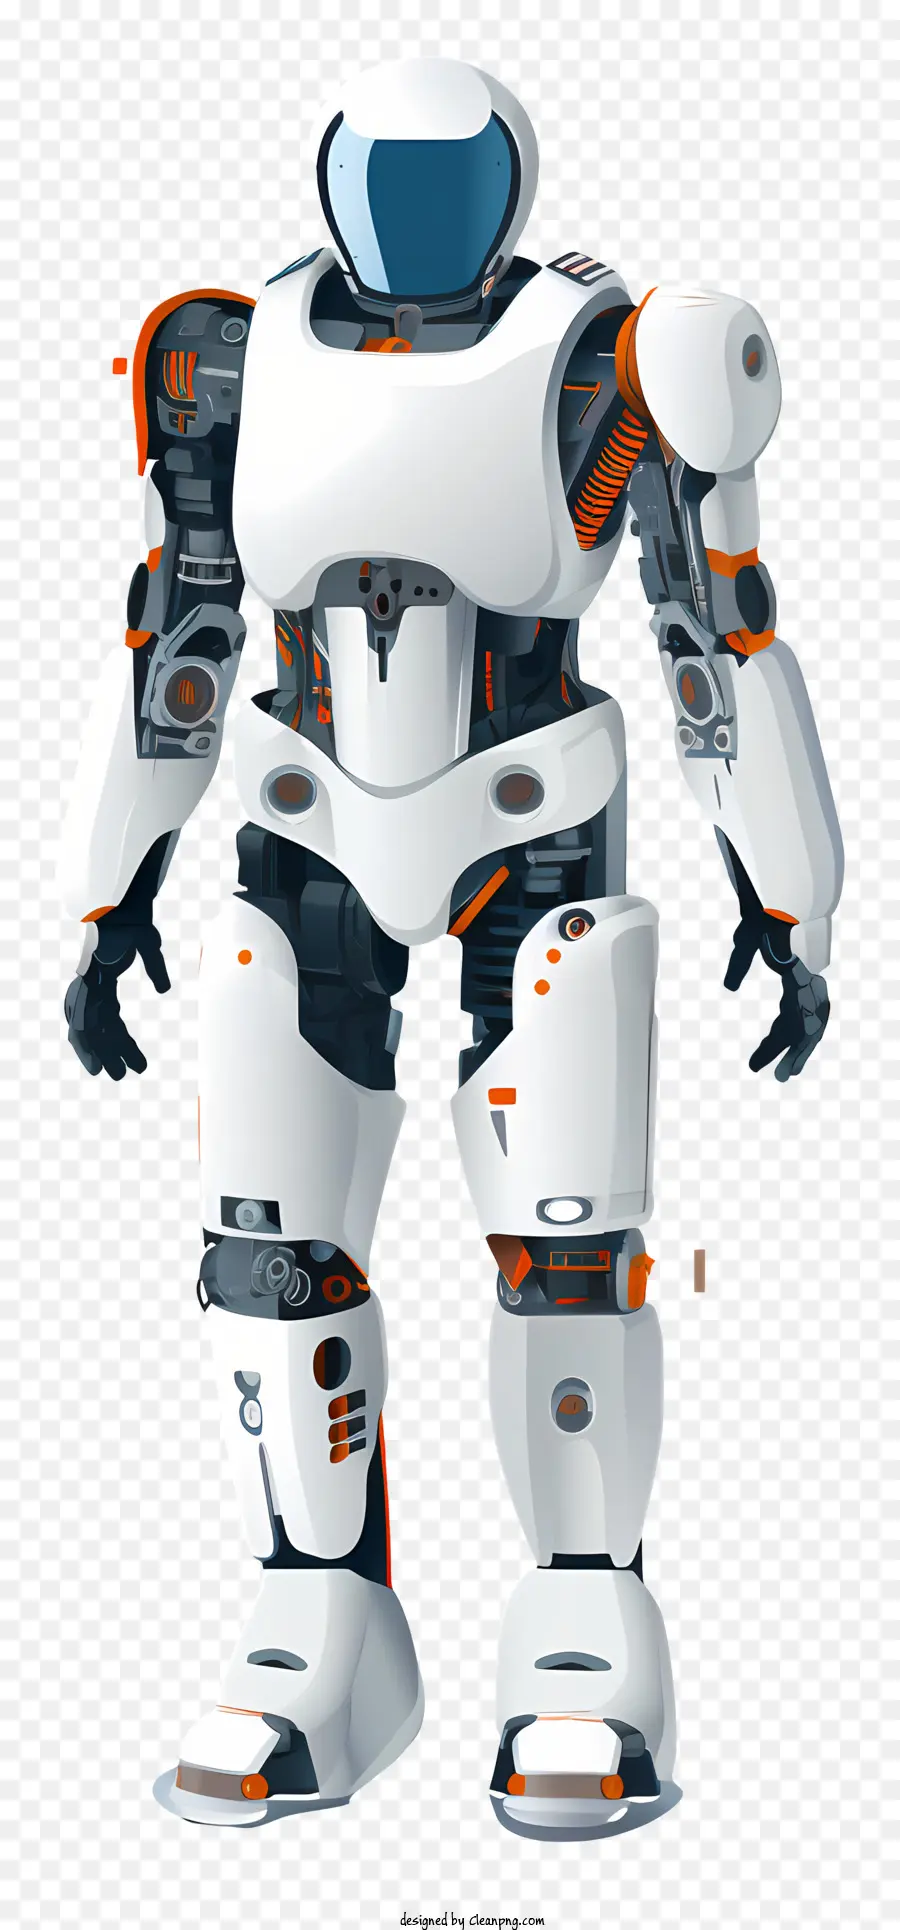 Humanoid Roboter weiß und orange Roboter mechanisches Erscheinungsbild Silber und Orangenkörper zwei orangefarbene Augen - Schwerwiegender humanoischer Roboter mit mechanischer Aussehen und Antennen